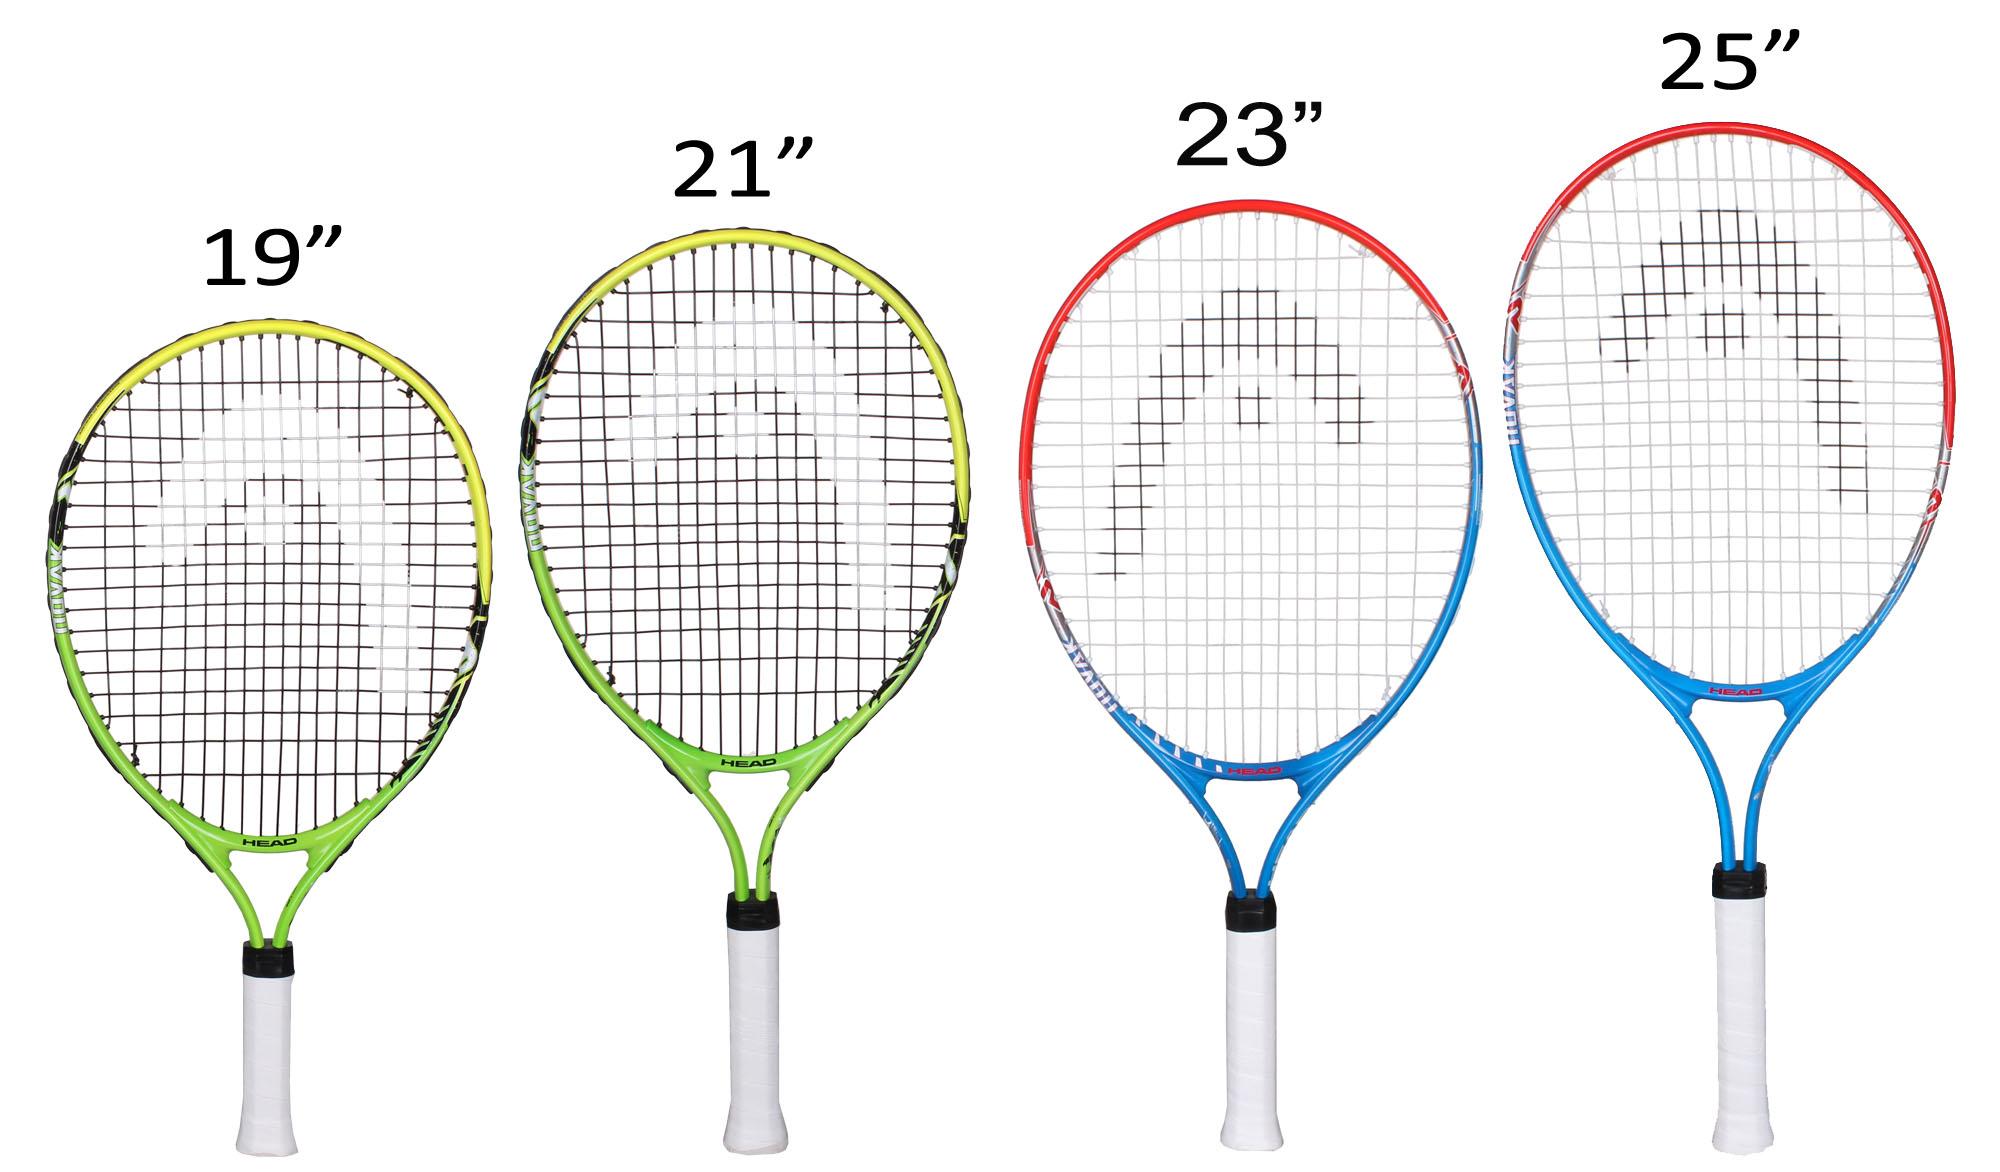 Ручка ракетки для большого тенниса. Размеры теннисной ракетки для большого тенниса 23. Ракетка для большого тенниса Размеры 26. Размер ручки ракетки для большого тенниса 3 7/8. Ракетка для большого тенниса head таблица размеров.